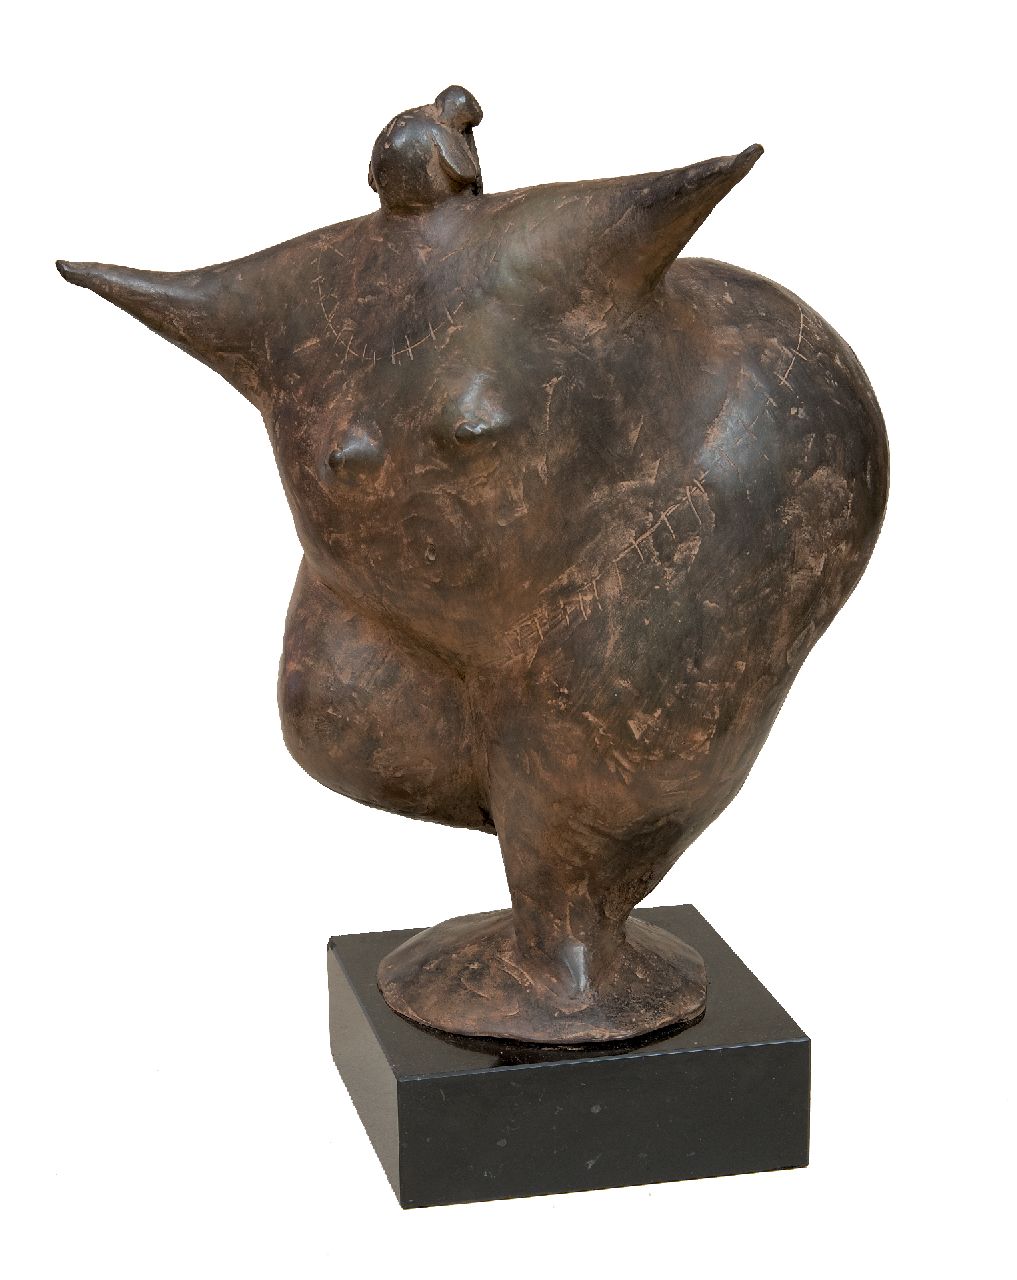 Hemert E. van | Evert van Hemert, Gerda, gepatineerd brons 27,0 x 23,0 cm, gesigneerd met monogram op achterkant basis en te dateren 2012